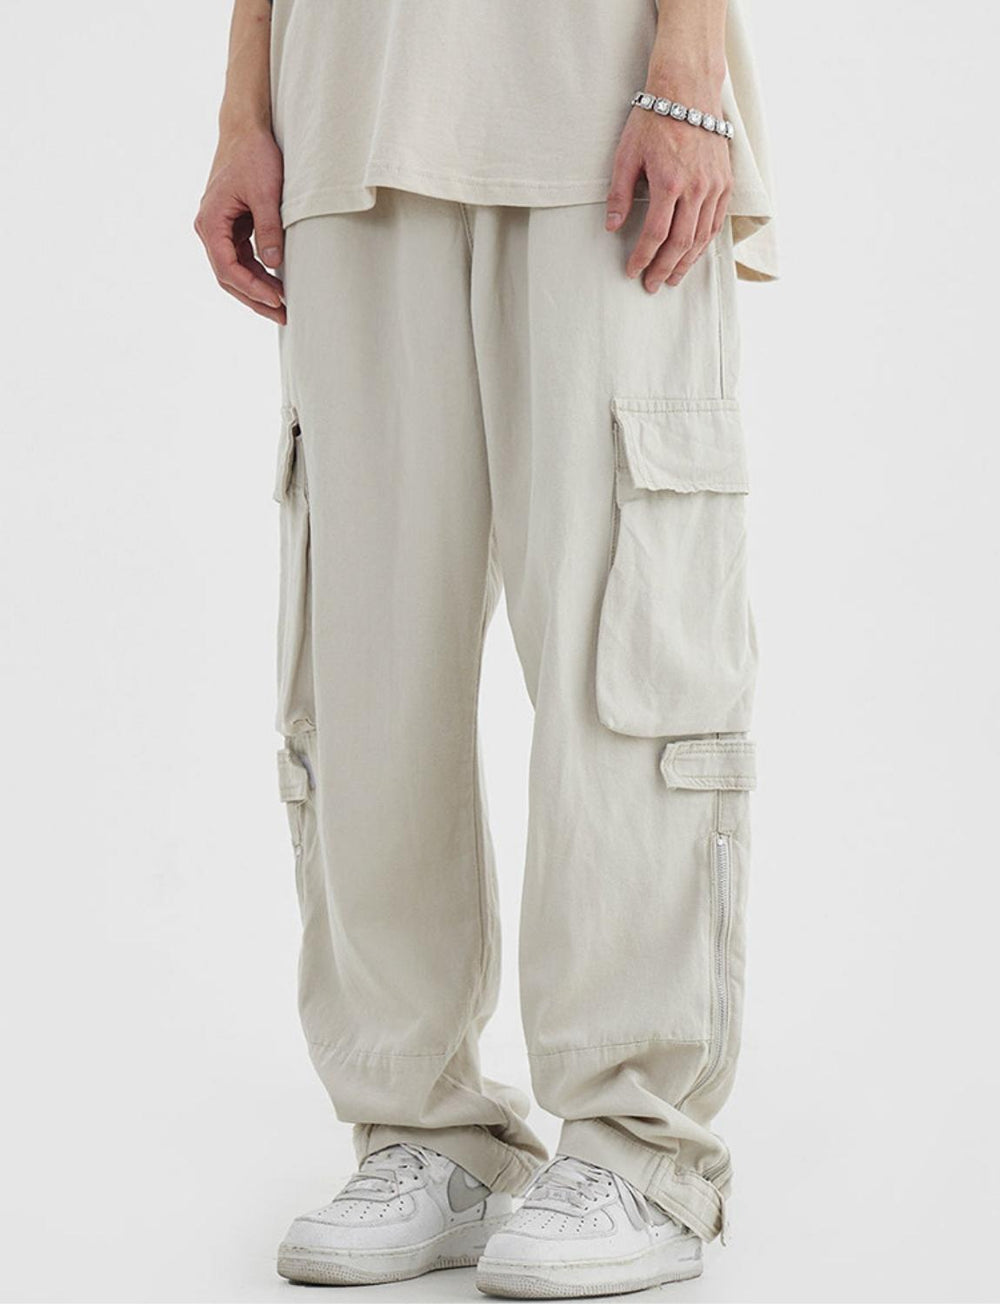 FSW® Hip Hop Casual-Wear Cargo Pants